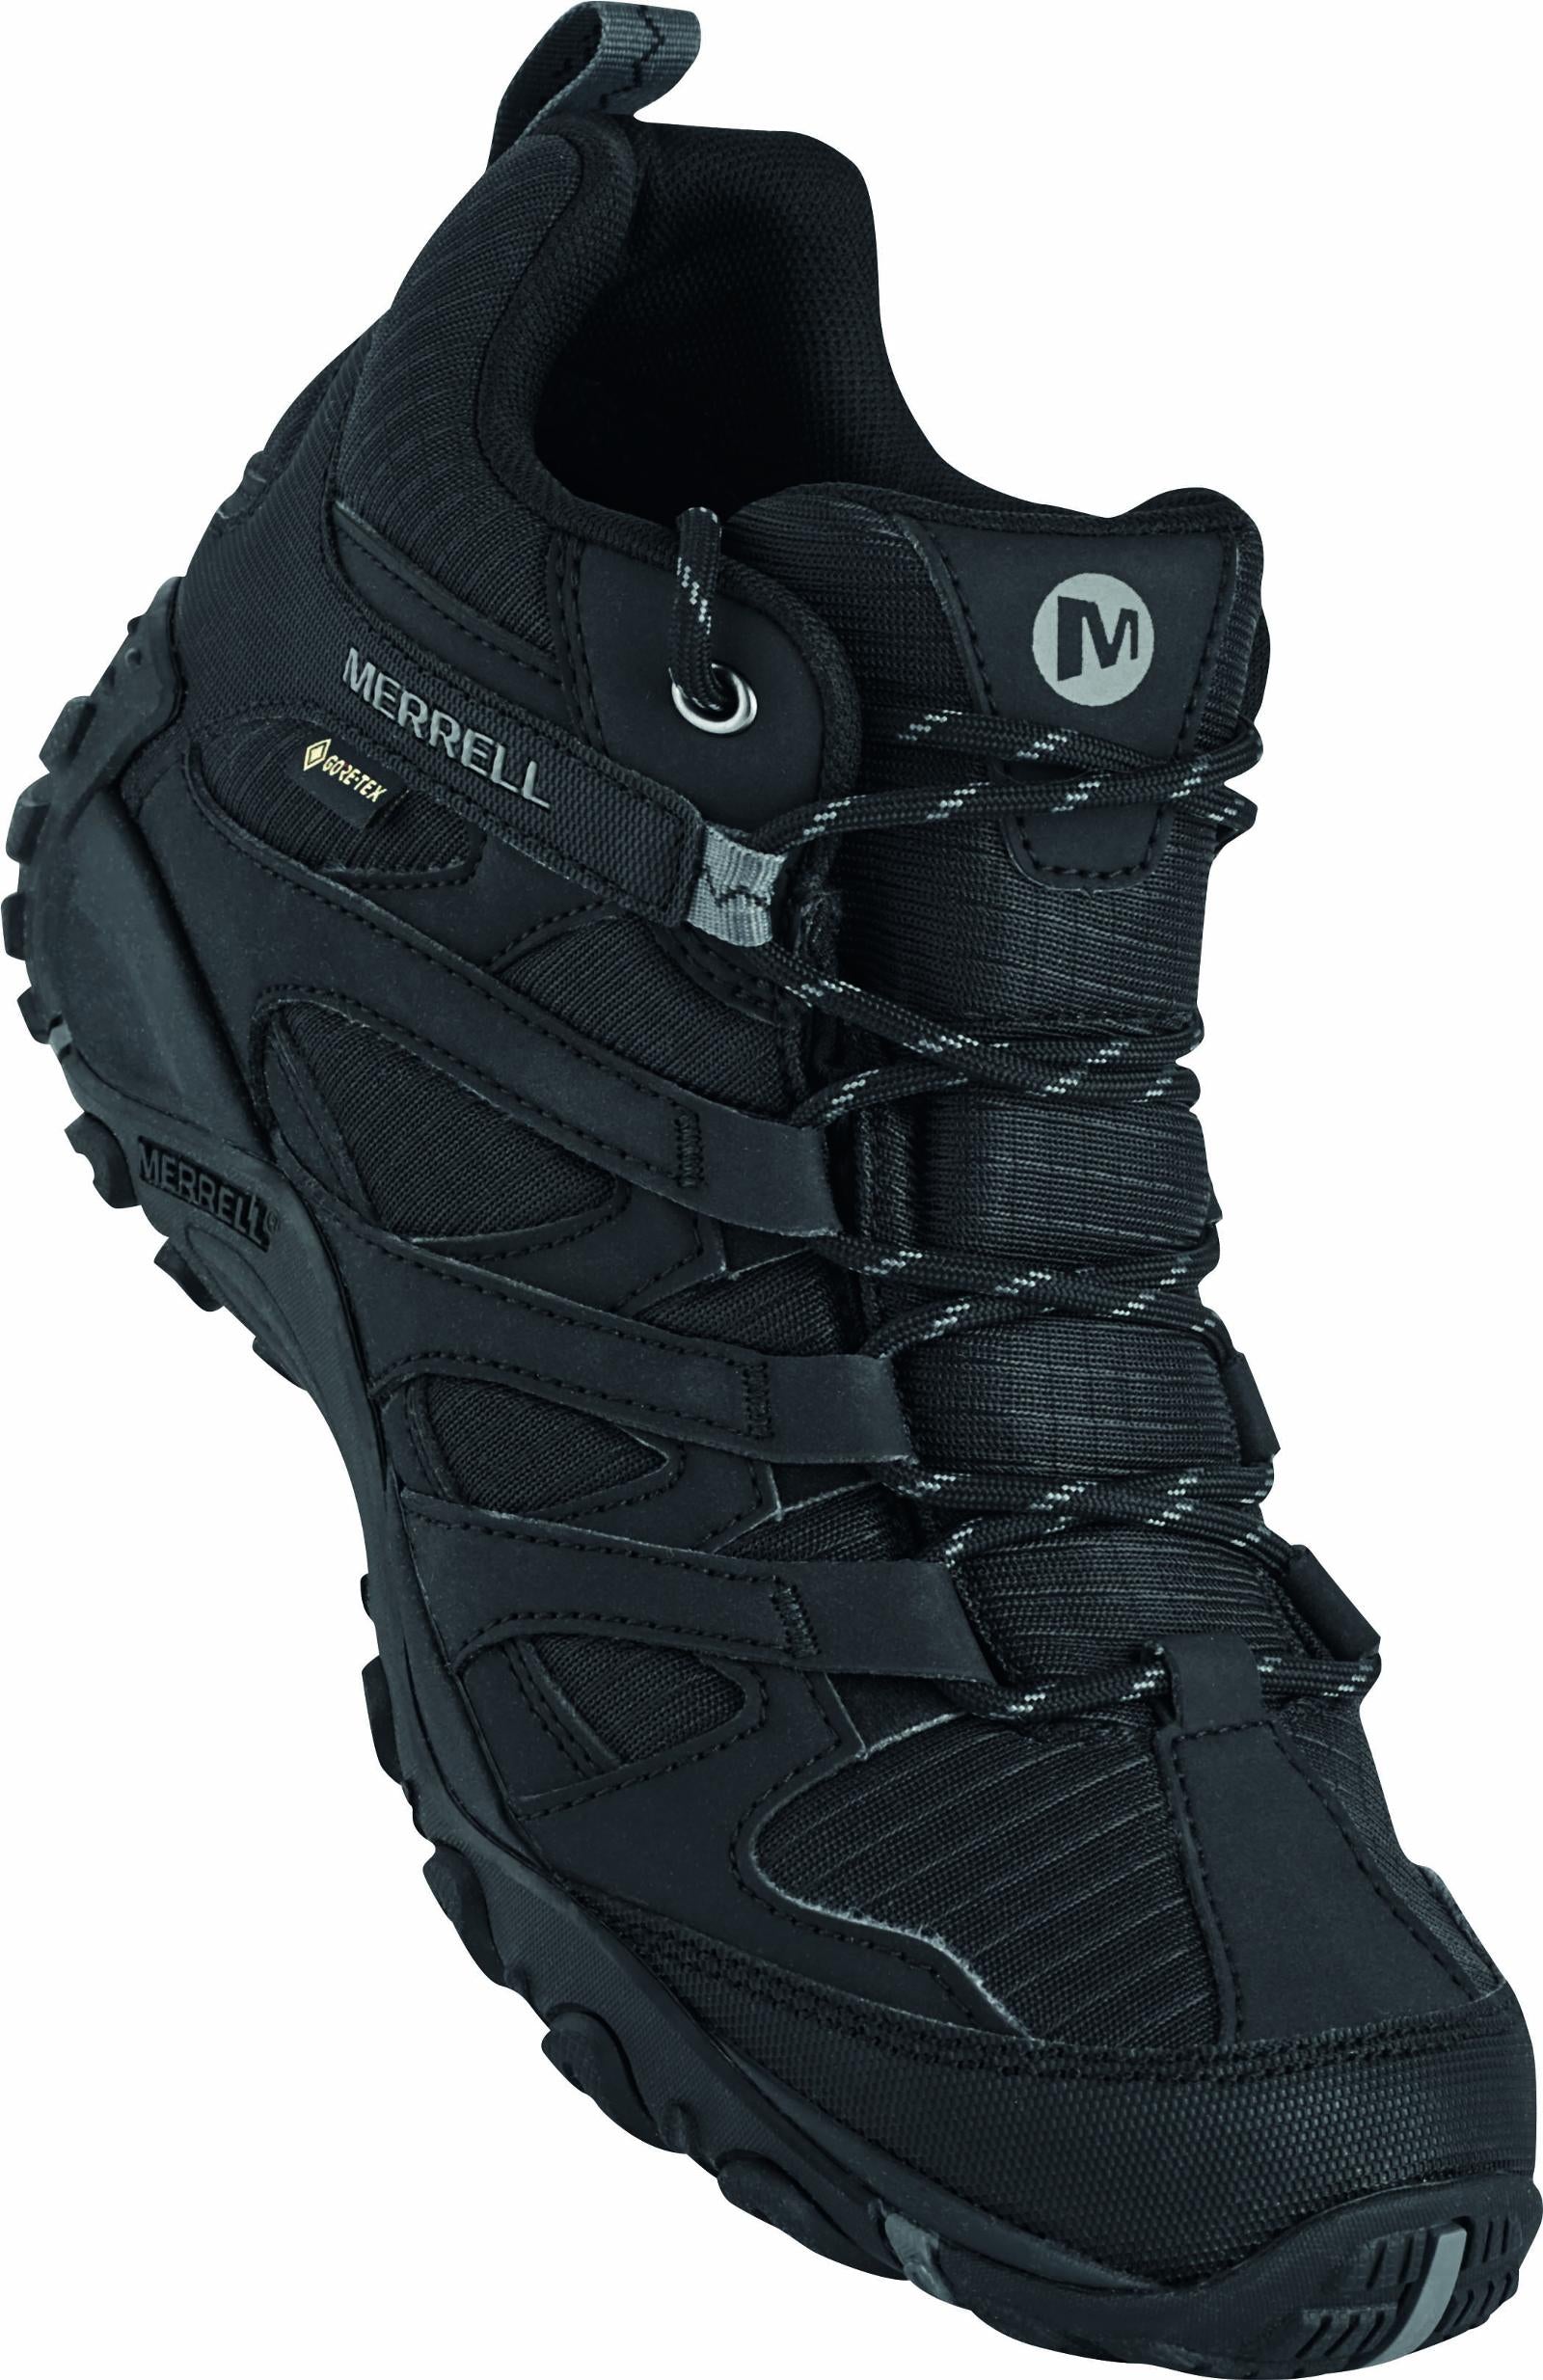 MERRELL Claypool Sport Mid Boots GORE-TEX - Color: Black